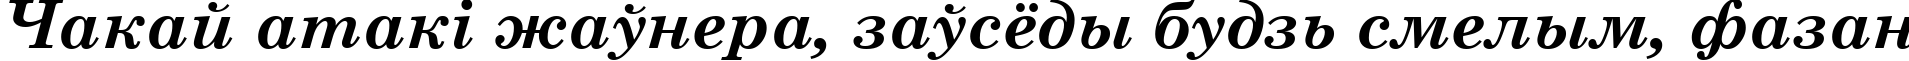 Пример написания шрифтом Century Schoolbook Bold Italic текста на белорусском